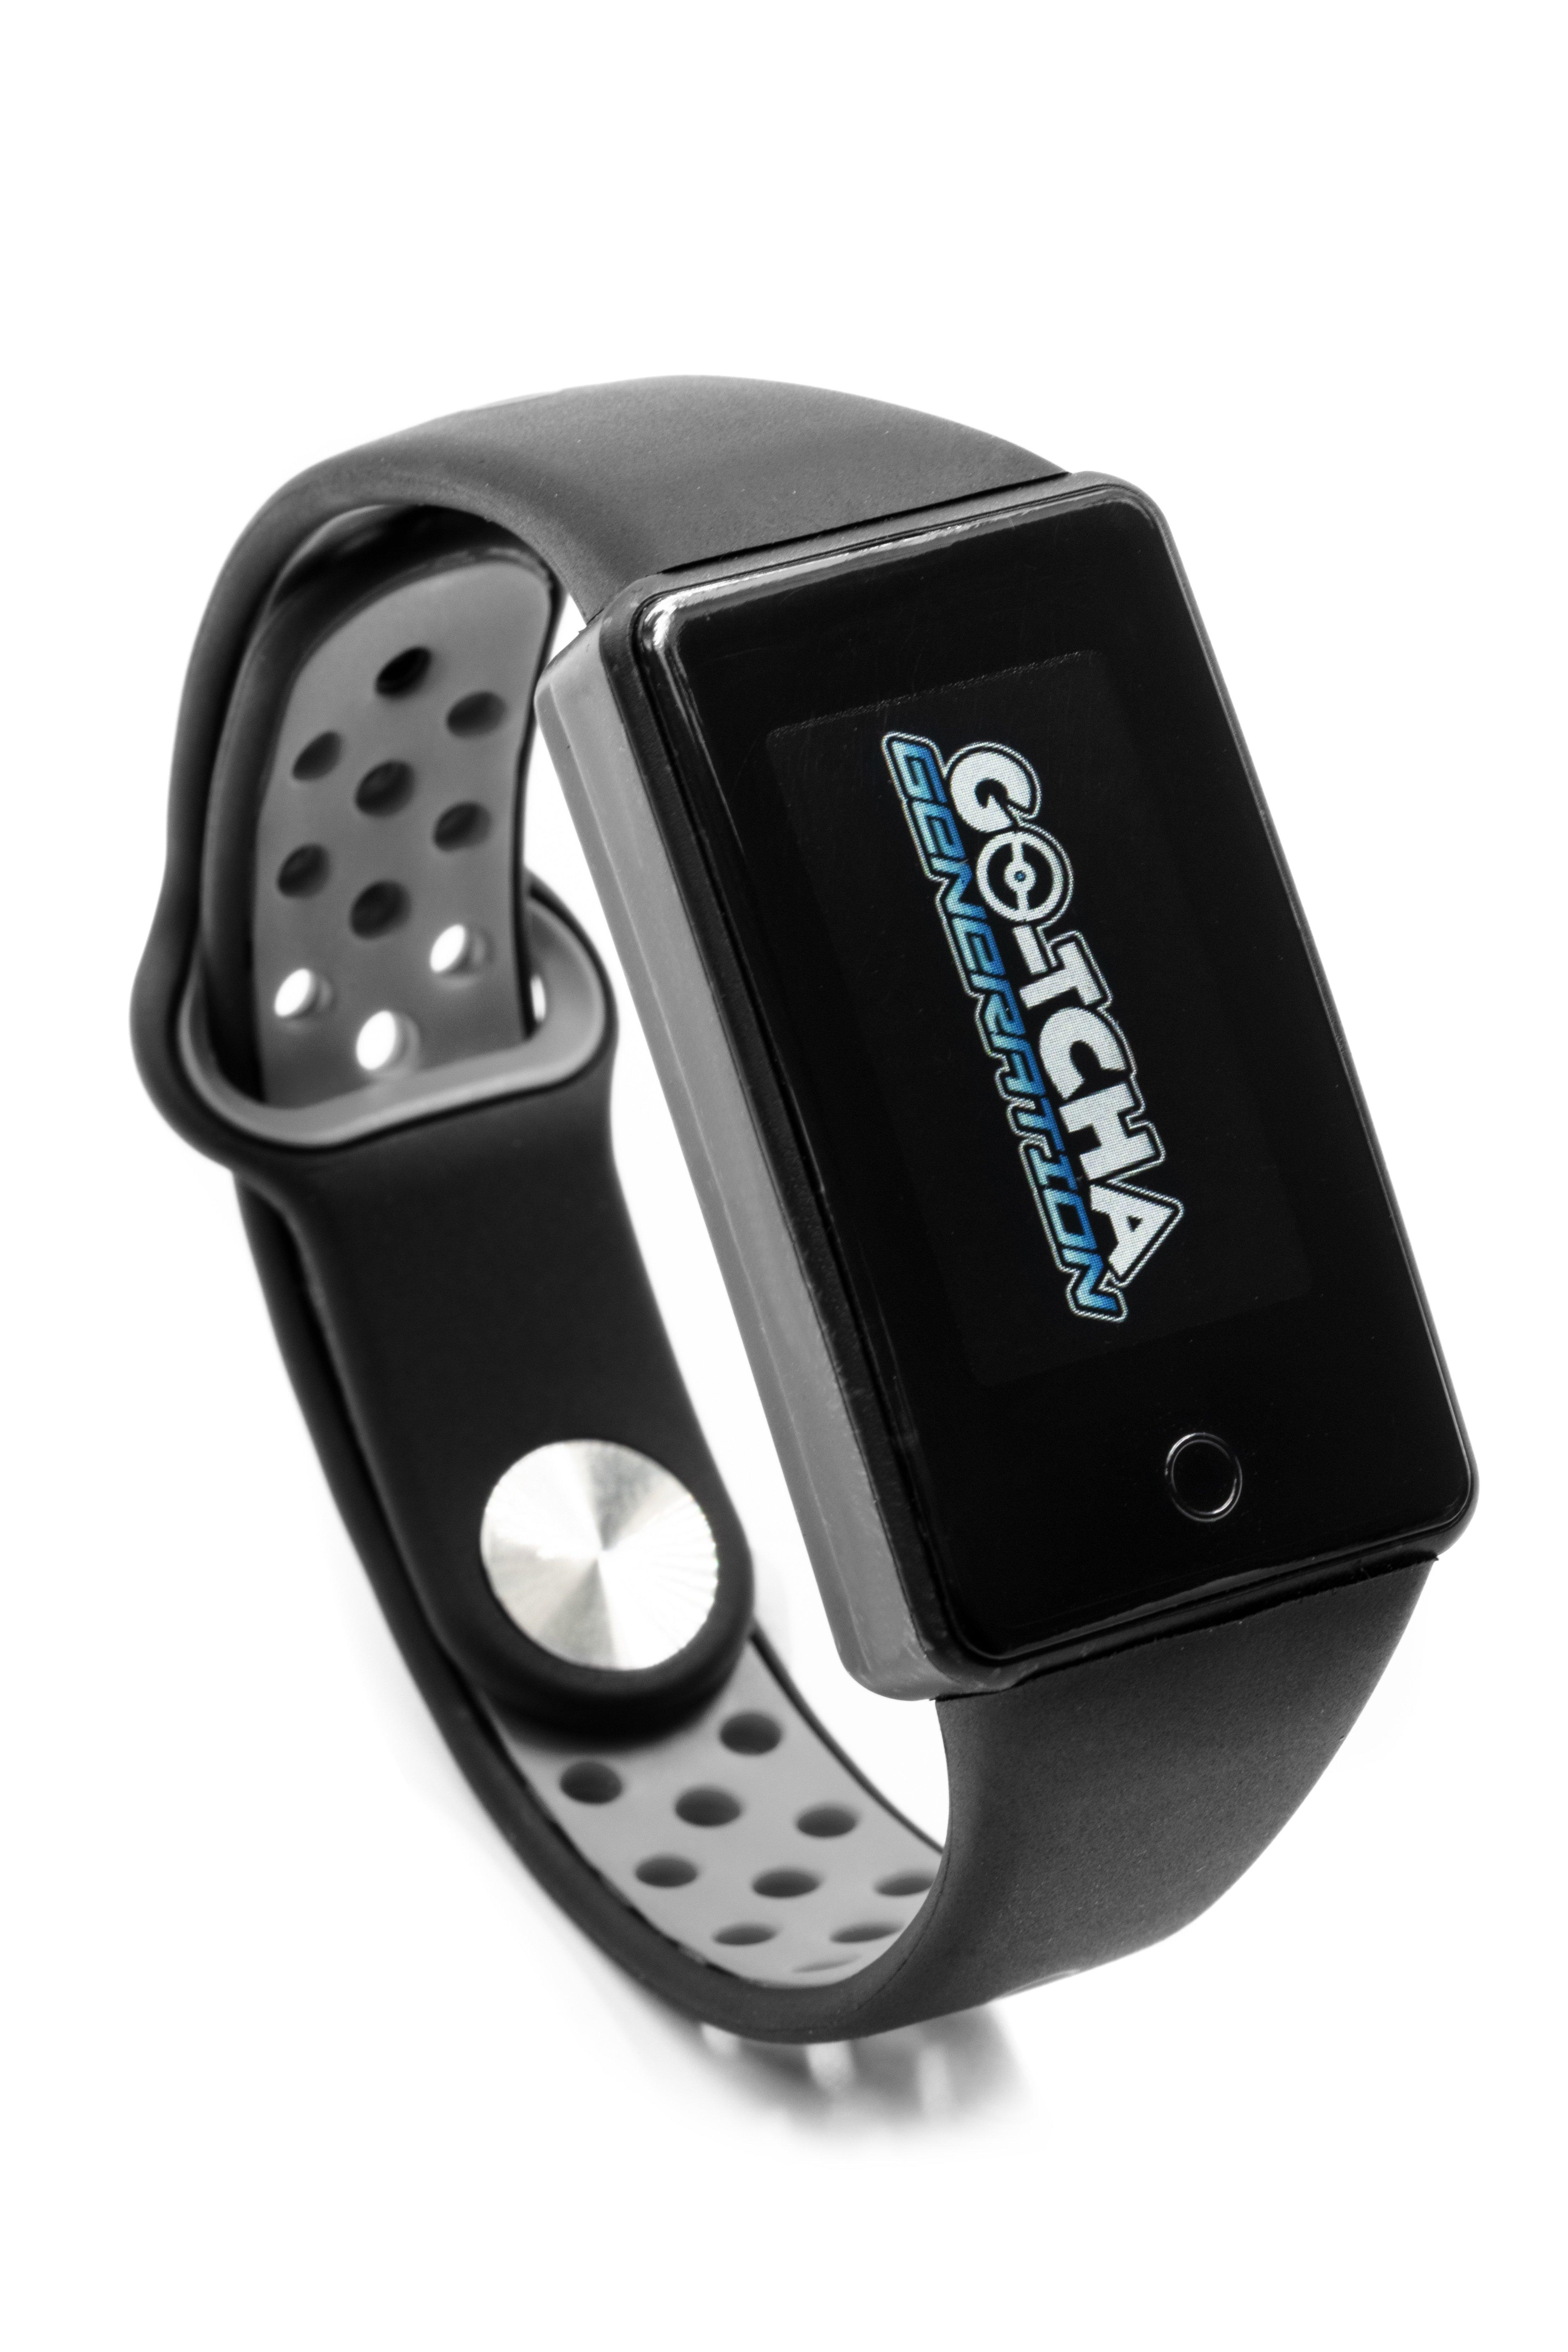 Datel Go-tcha Evolve Wristband Watch for Pokémon GO  - Best Buy